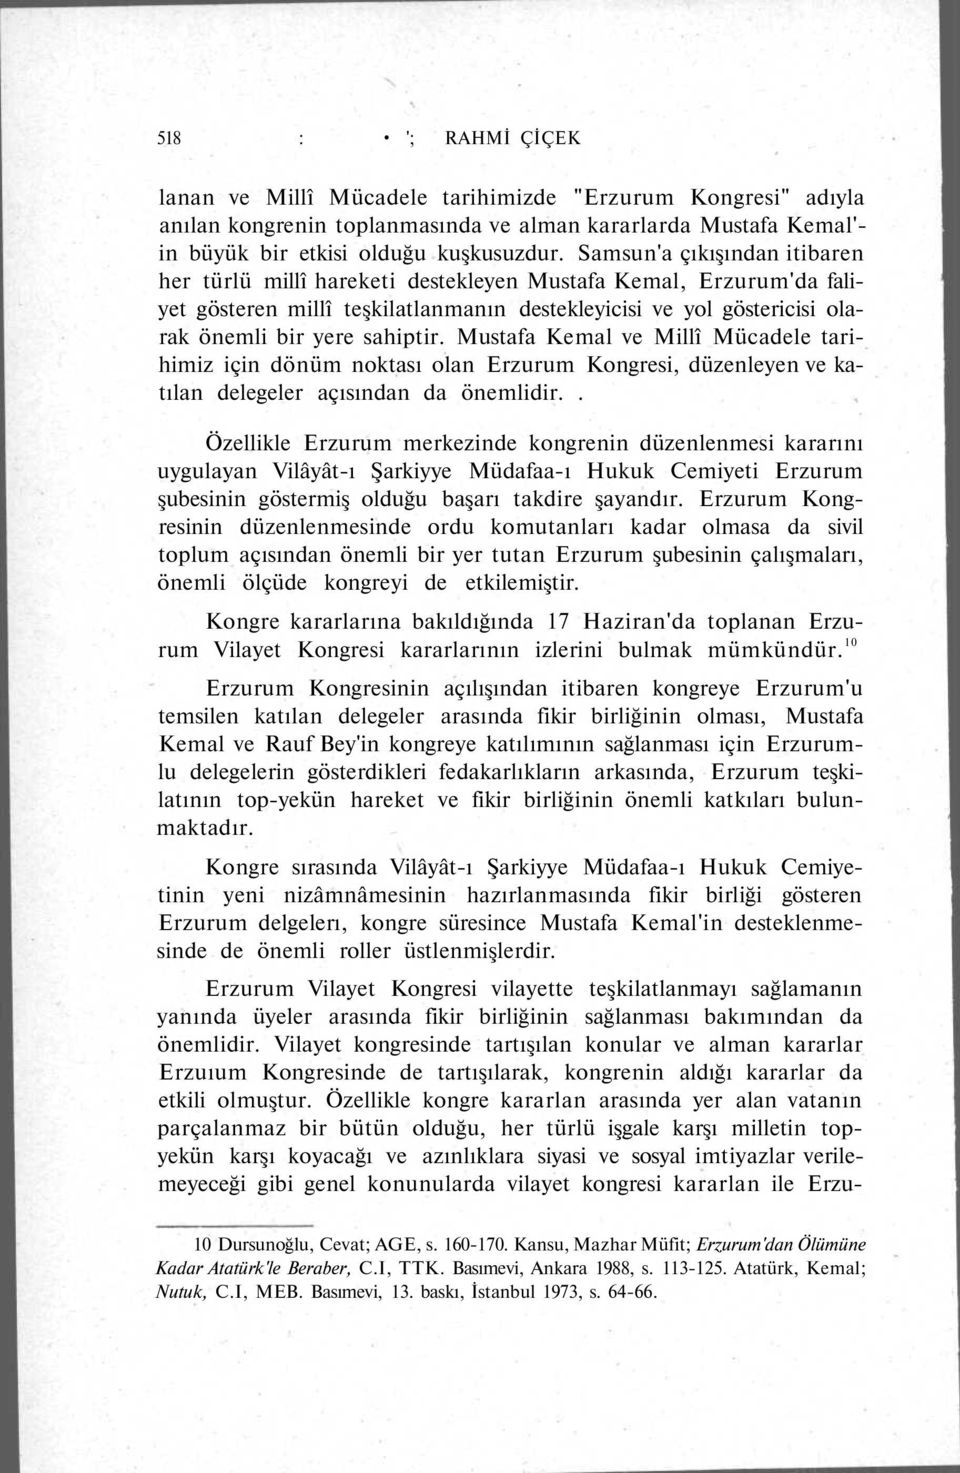 Mustafa Kemal ve Millî Mücadele tarihimiz için dönüm noktası olan Erzurum Kongresi, düzenleyen ve katılan delegeler açısından da önemlidir.